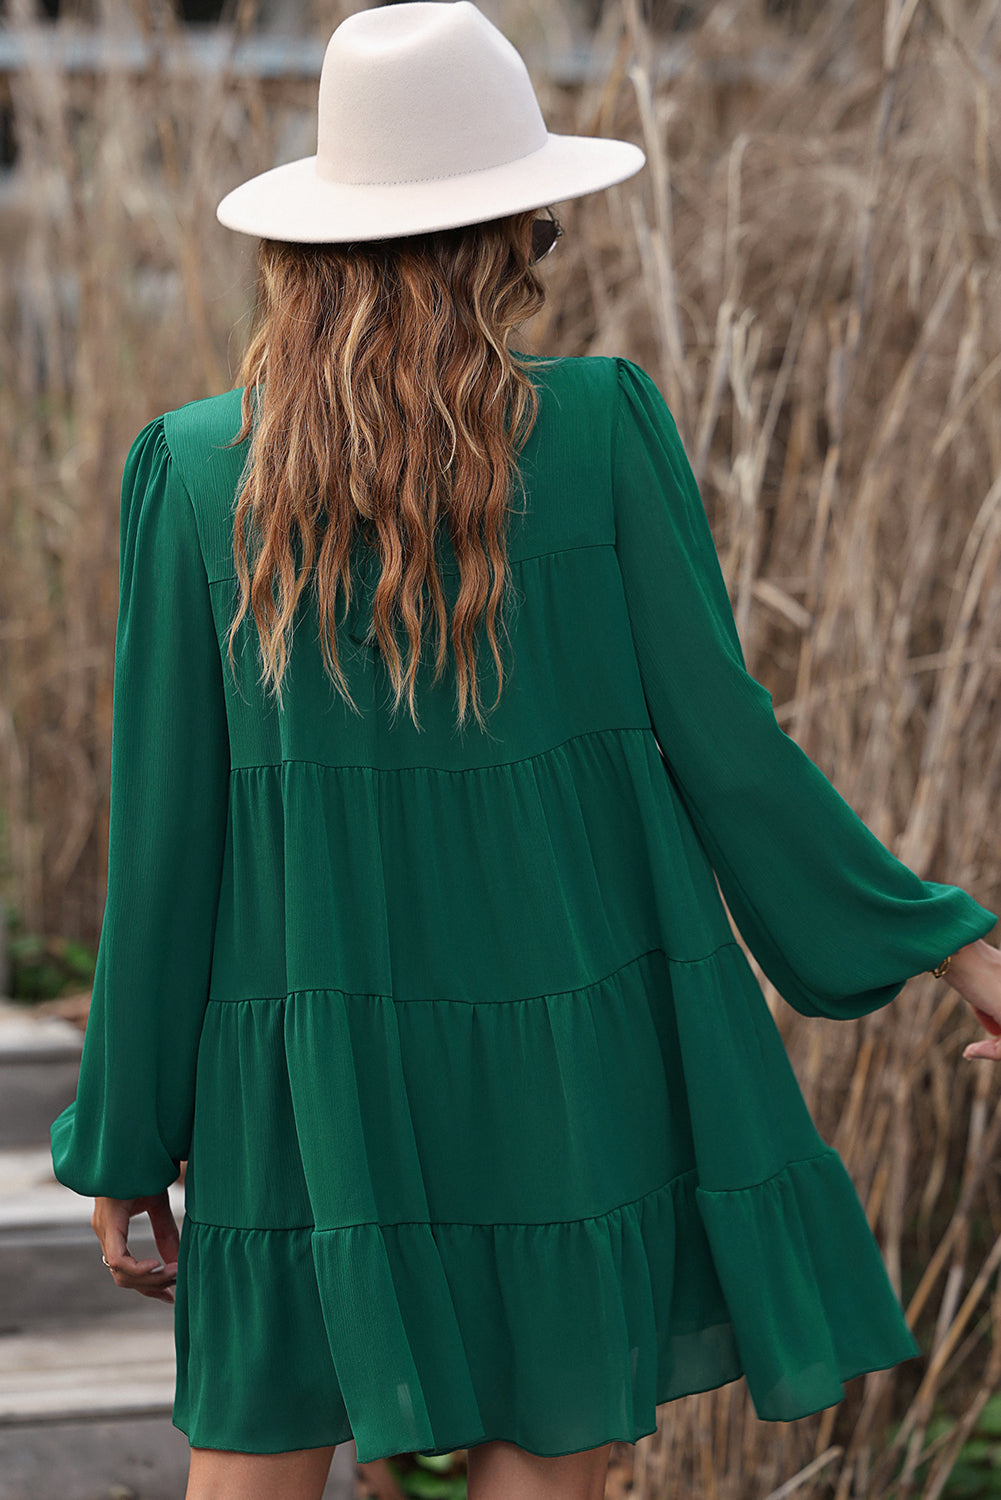 Grünes, gestuftes Kleid mit Puffärmeln, Stehkragen und Knoten am Rücken